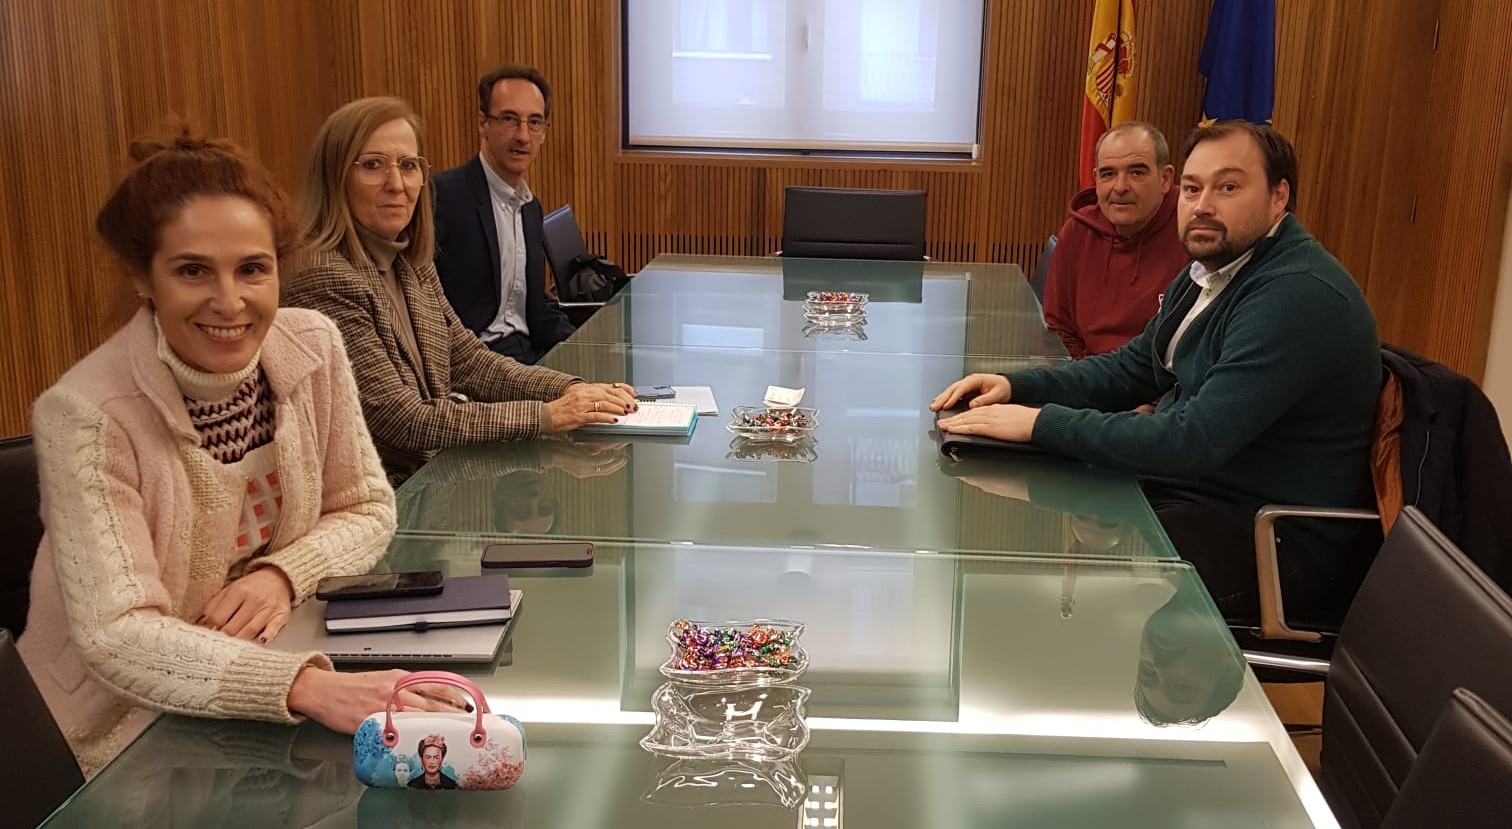 La presidenta de la CHD se reúne con el Ayuntamiento de Salduero (Soria) para buscar soluciones al problema de las inundaciones